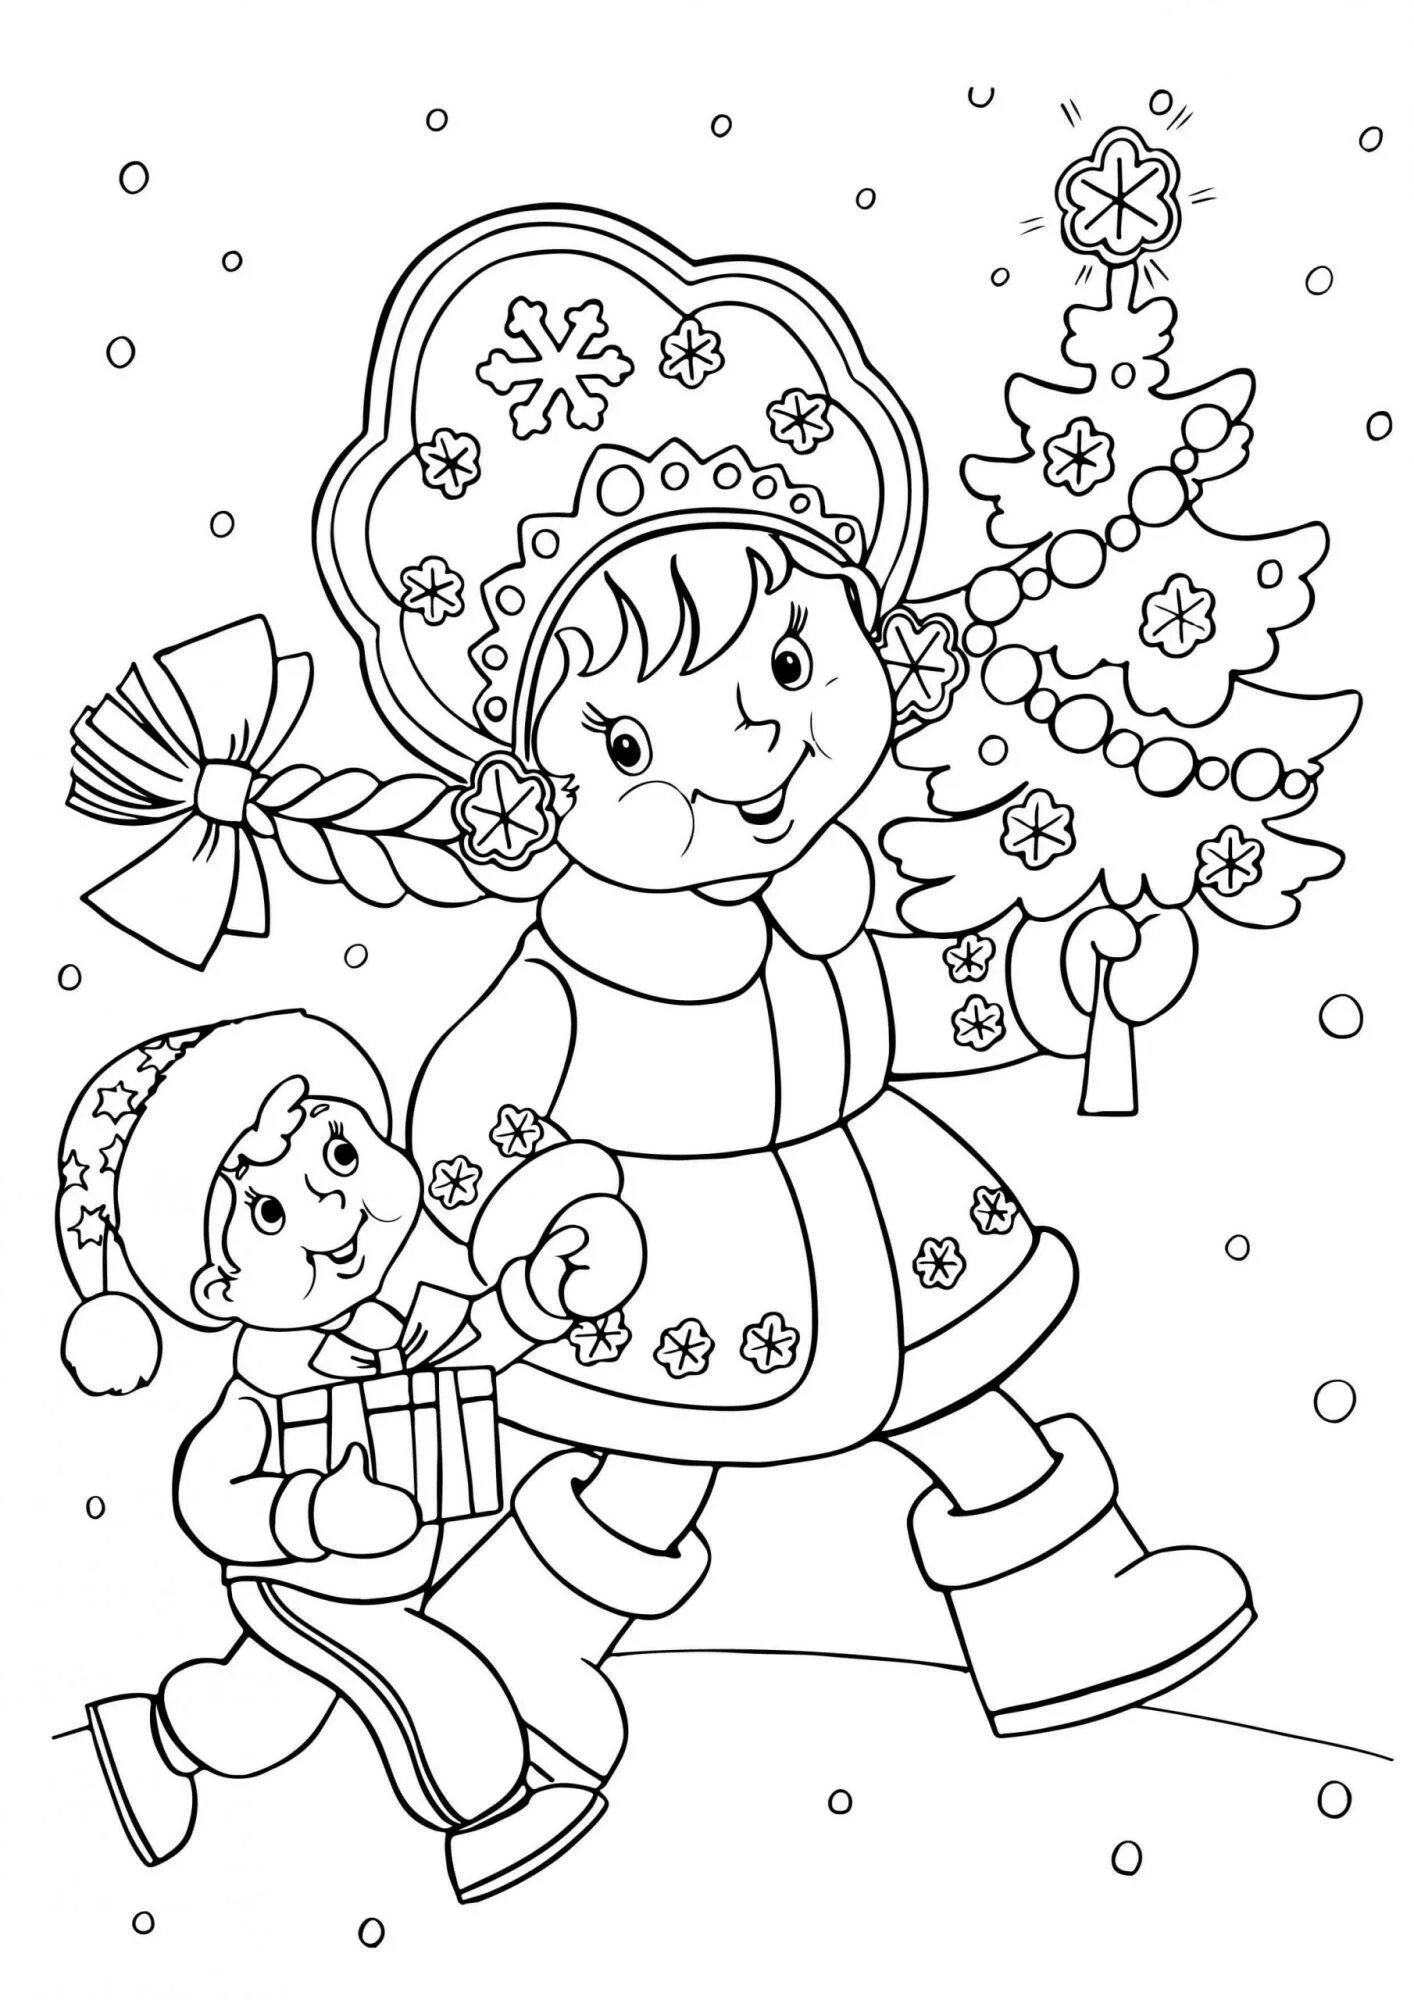 Новый год распечатанная. Раскраска Новогодняя для детей. Новогодние раскраски Снегурочка. Раскраска "Снегурочка". Новогодние рисунки для детей.